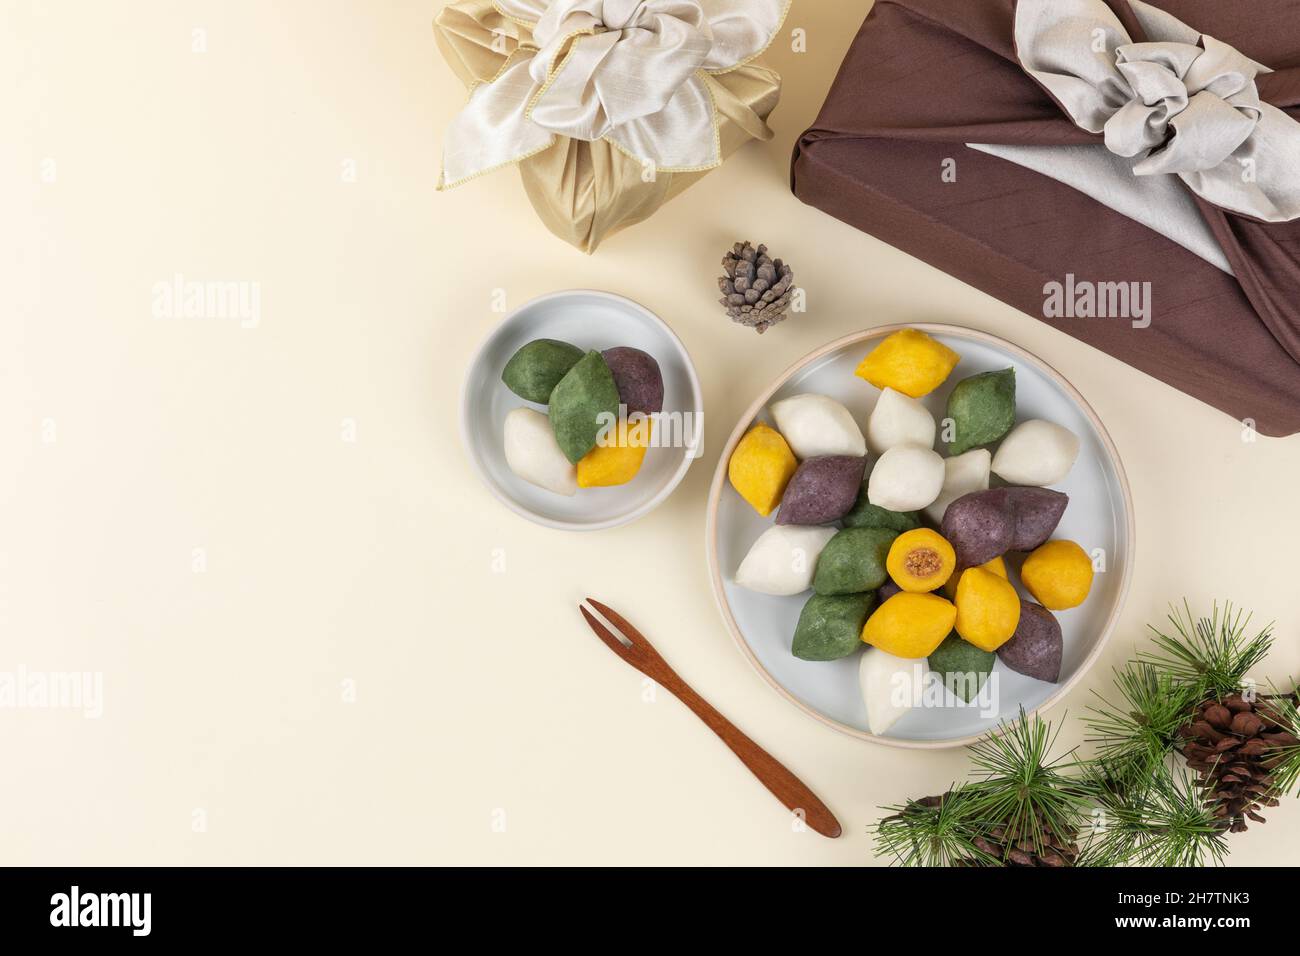 Koreanische traditionelle Lebensmittel Geschenk-Set, Songpyeon Reiskuchen  mit Pinienzapfen und Nadeln Stockfotografie - Alamy